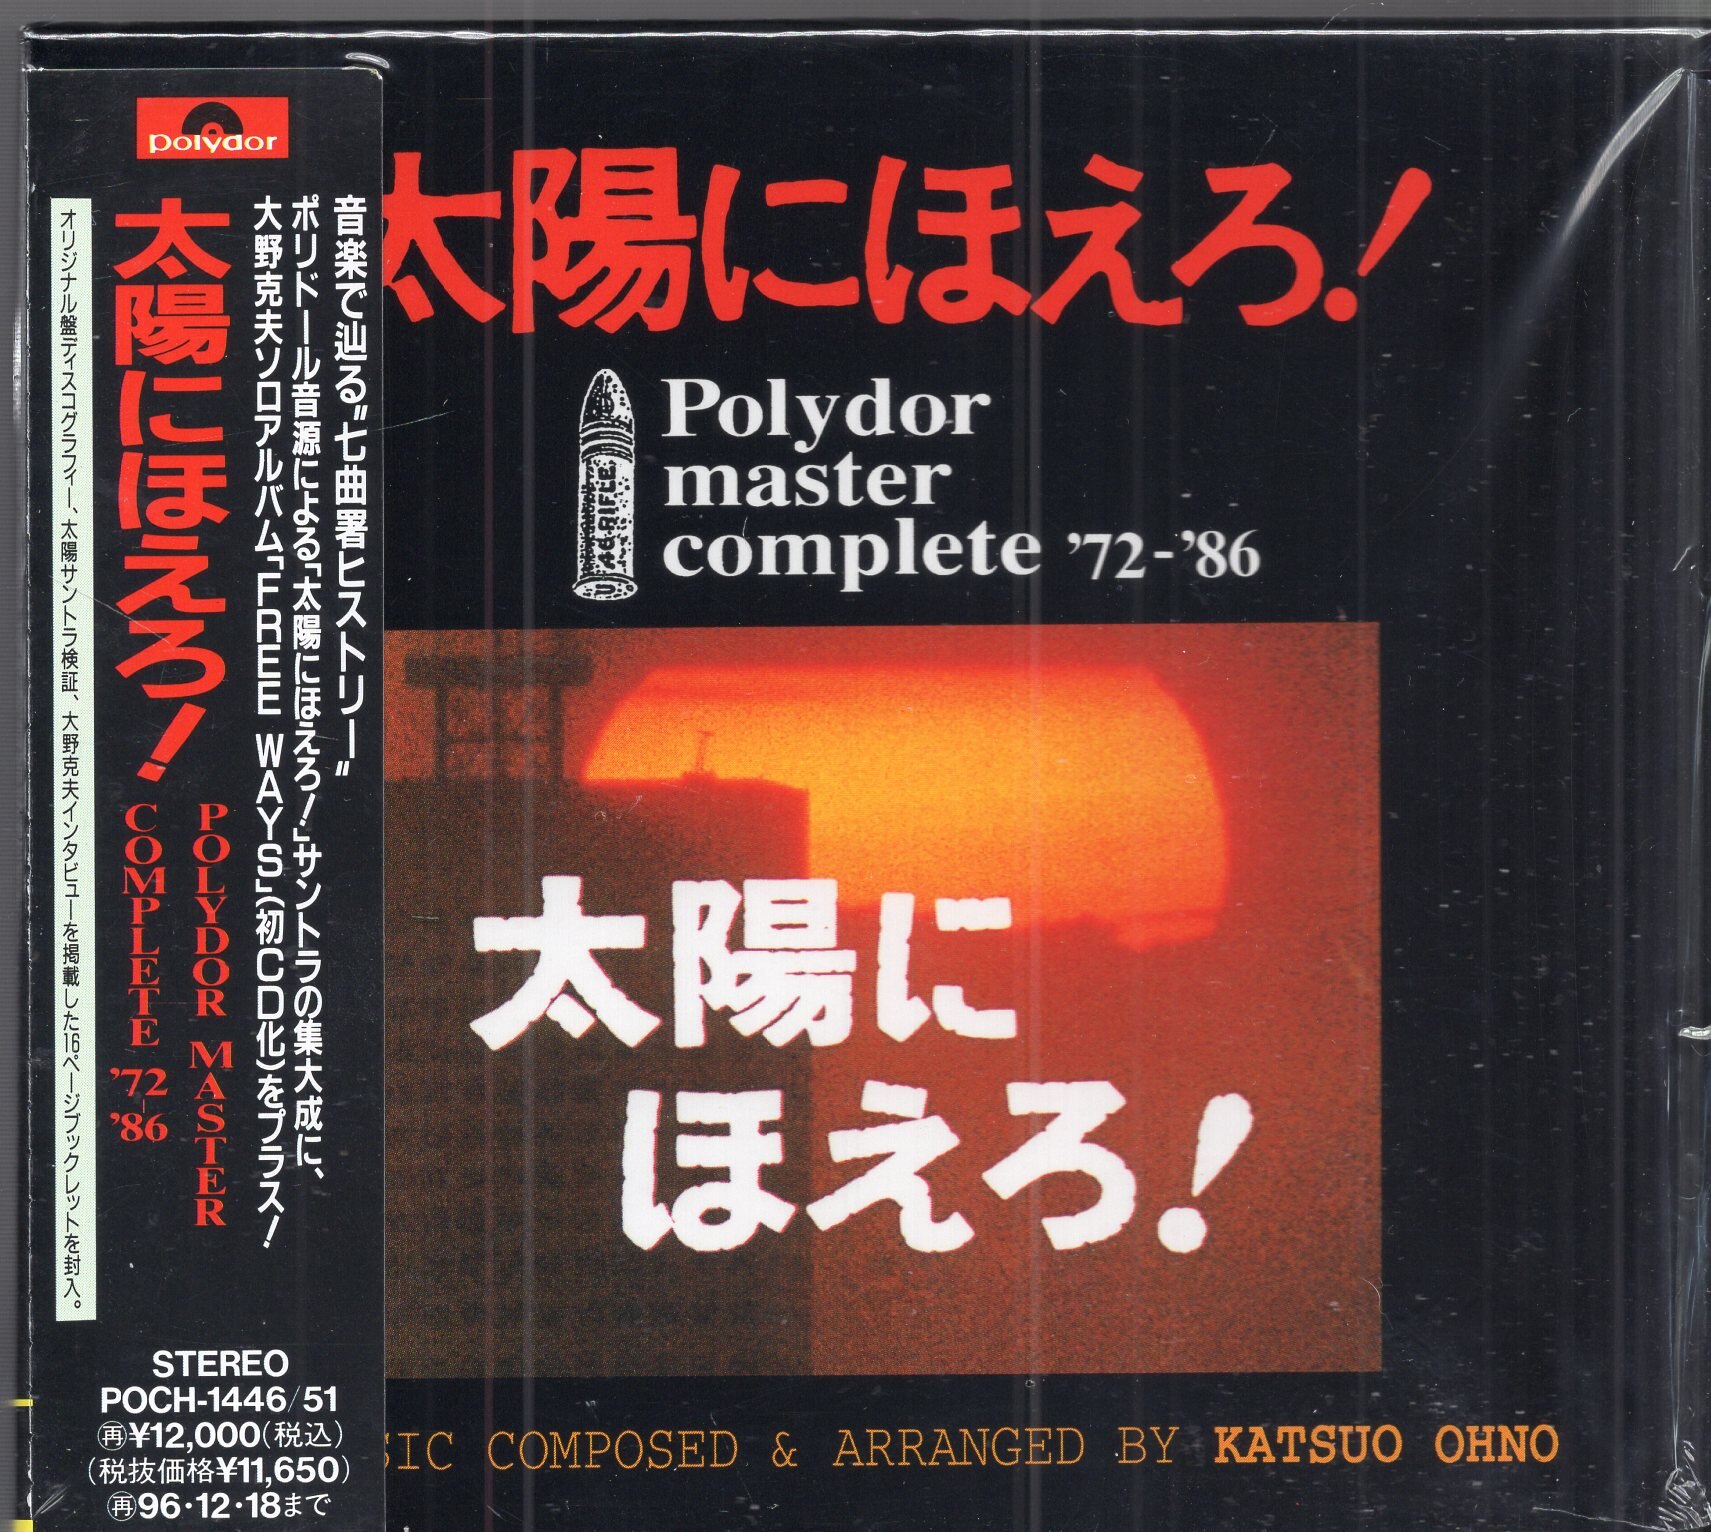 CDDVD「太陽にほえろ!」ポリドール・マスター・コンプリート'72～'86